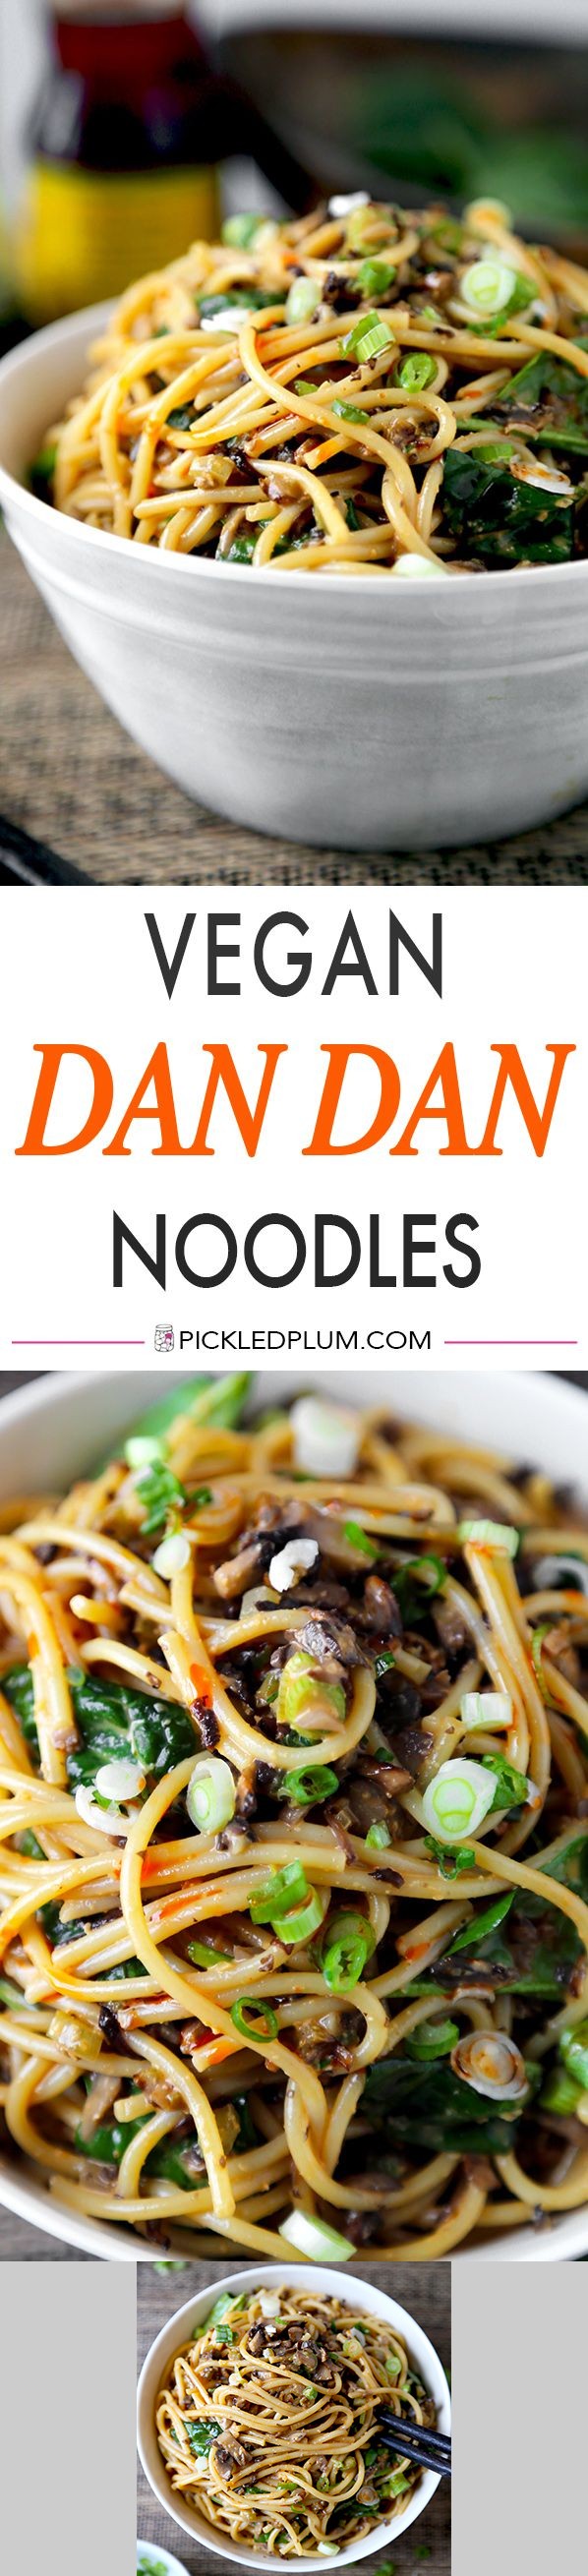 Vegan Dan Dan Noodles